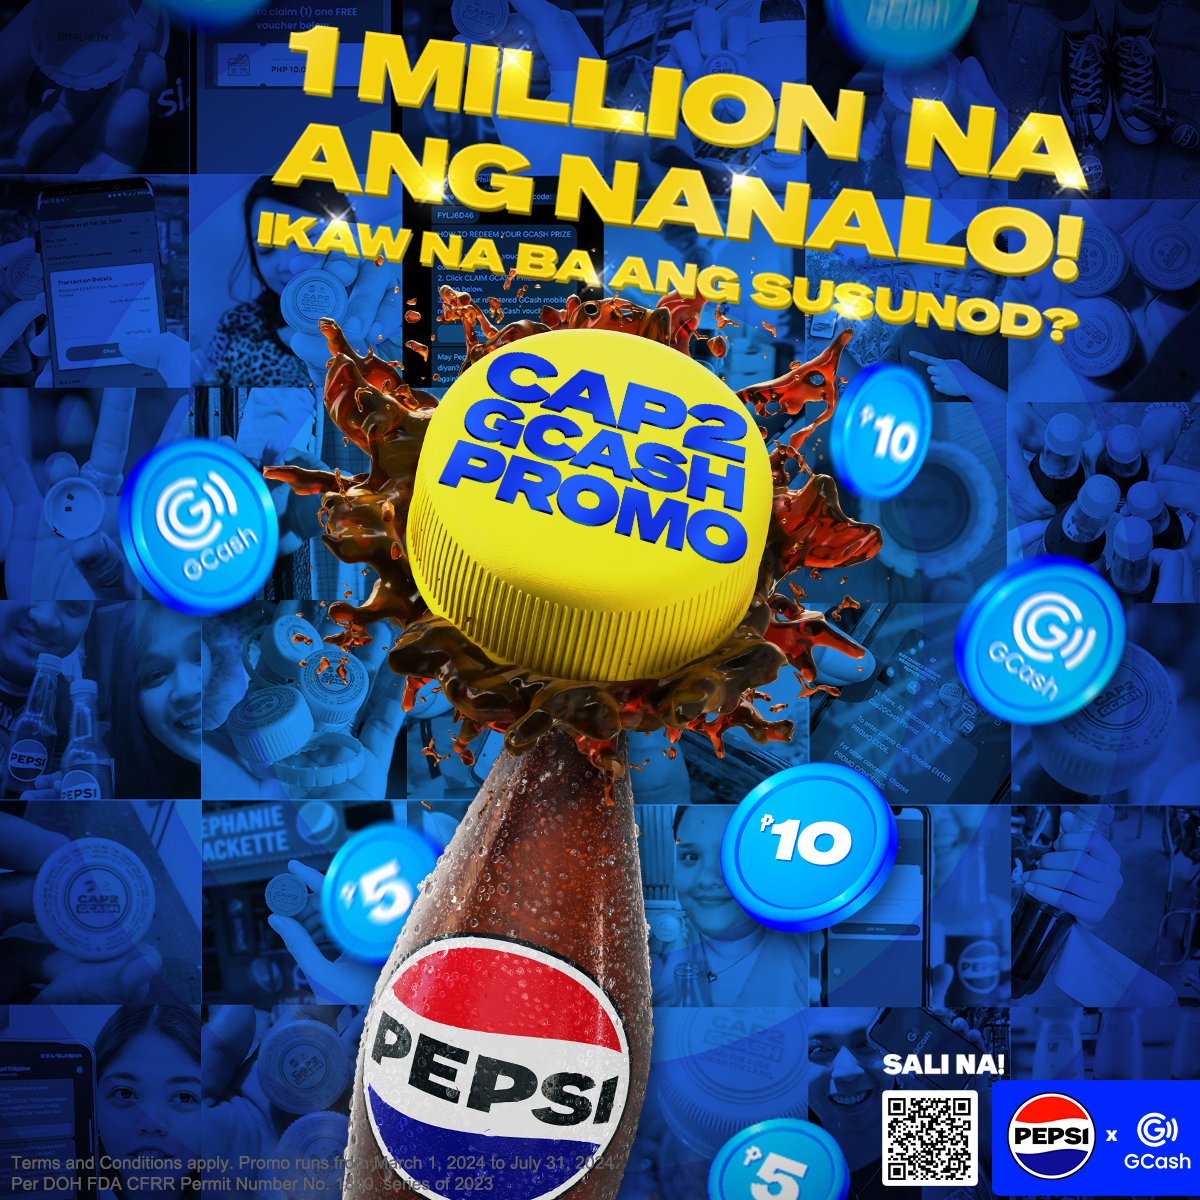 1 million entries na ang nanalo sa #PepsiCap2GCashPromo! Bili na ng Pepsi at sali ka na rin for a chance to win instant GCash prizes daily, monthly, at up to 1 Million pesos sa grand draw!